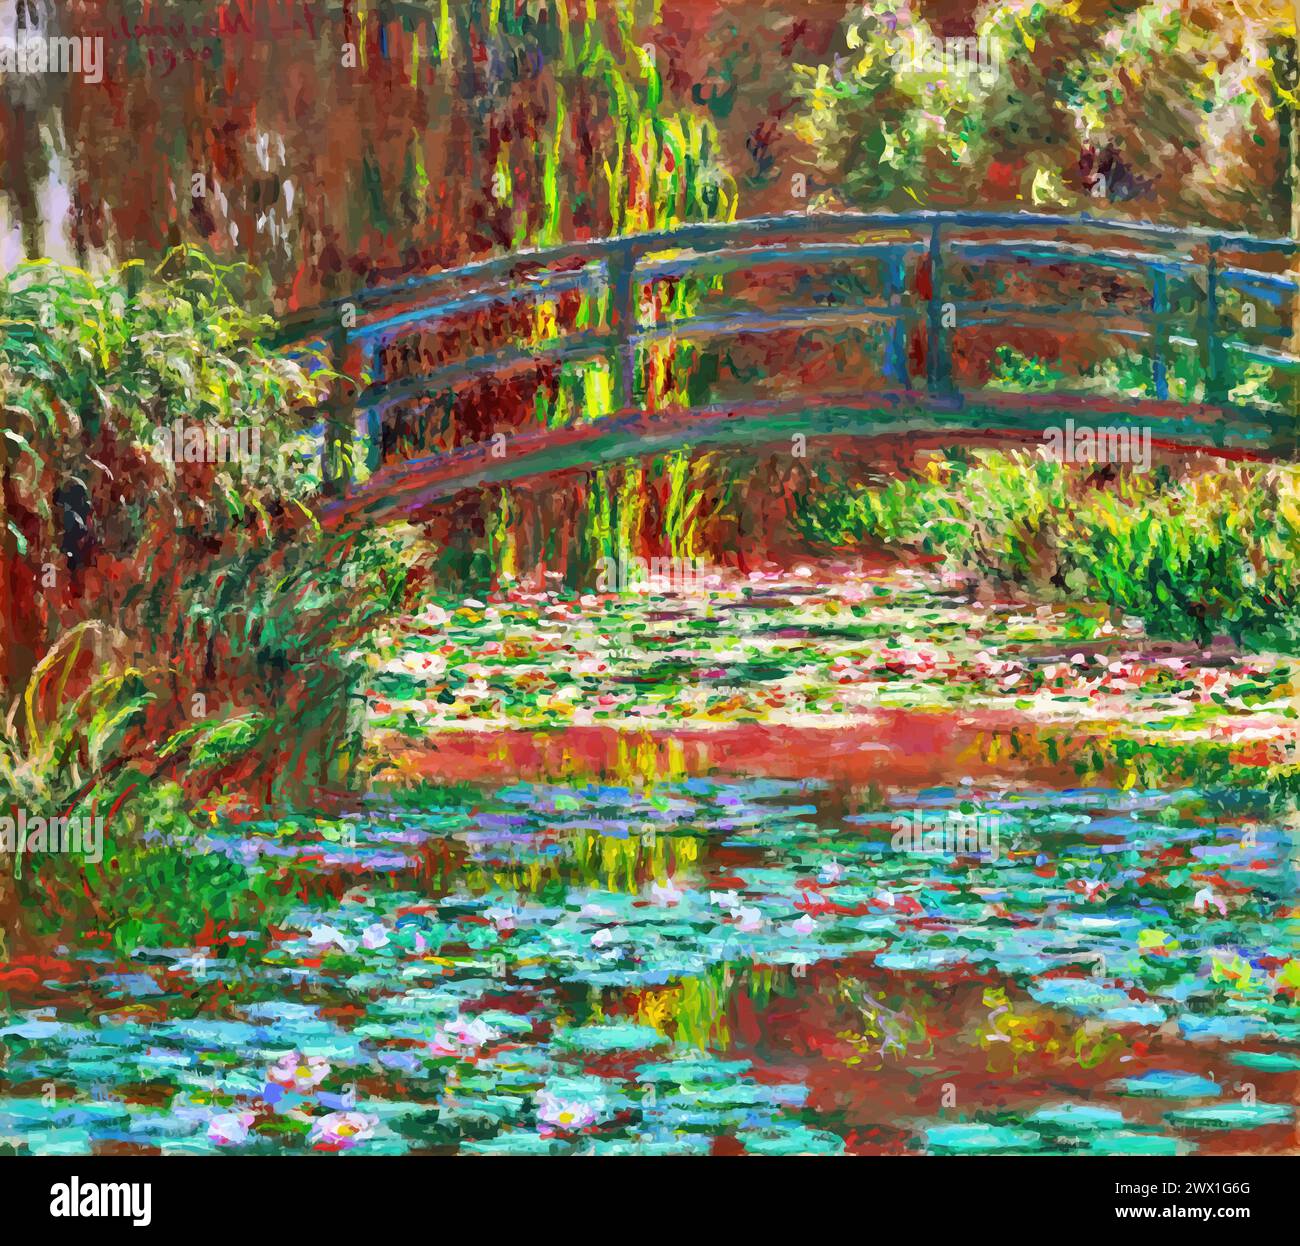 Bassin de nénuphars, 1900 (peinture) par l'artiste Monet, Claude (1840-1926) Français. Illustration de Vecteur